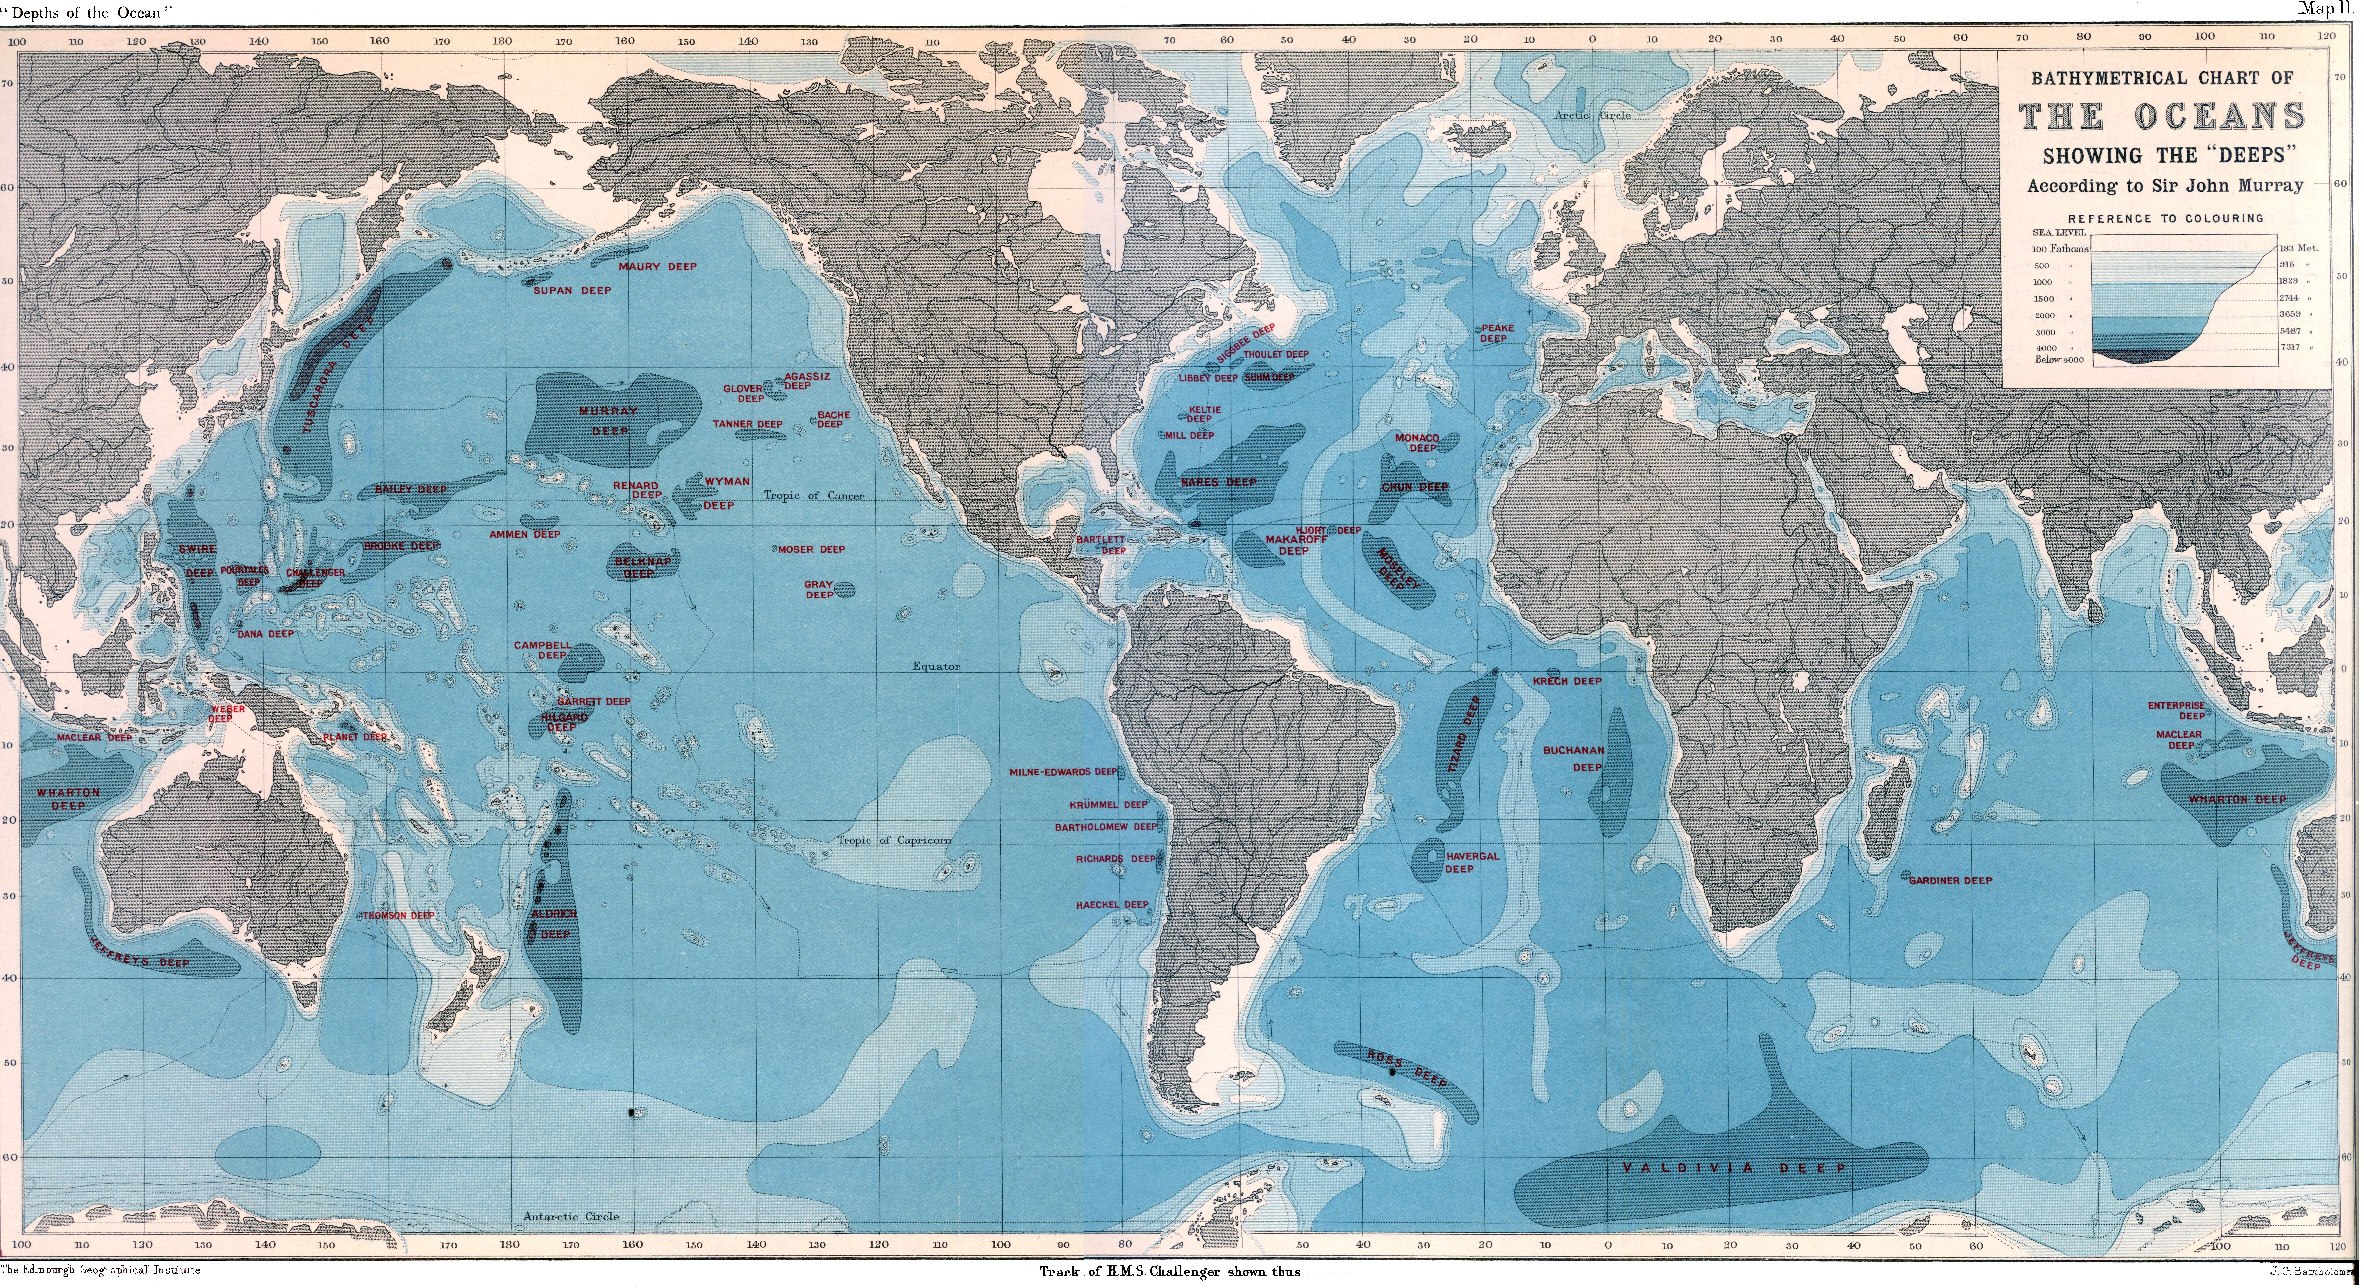 Mapa das fossas oceânicas